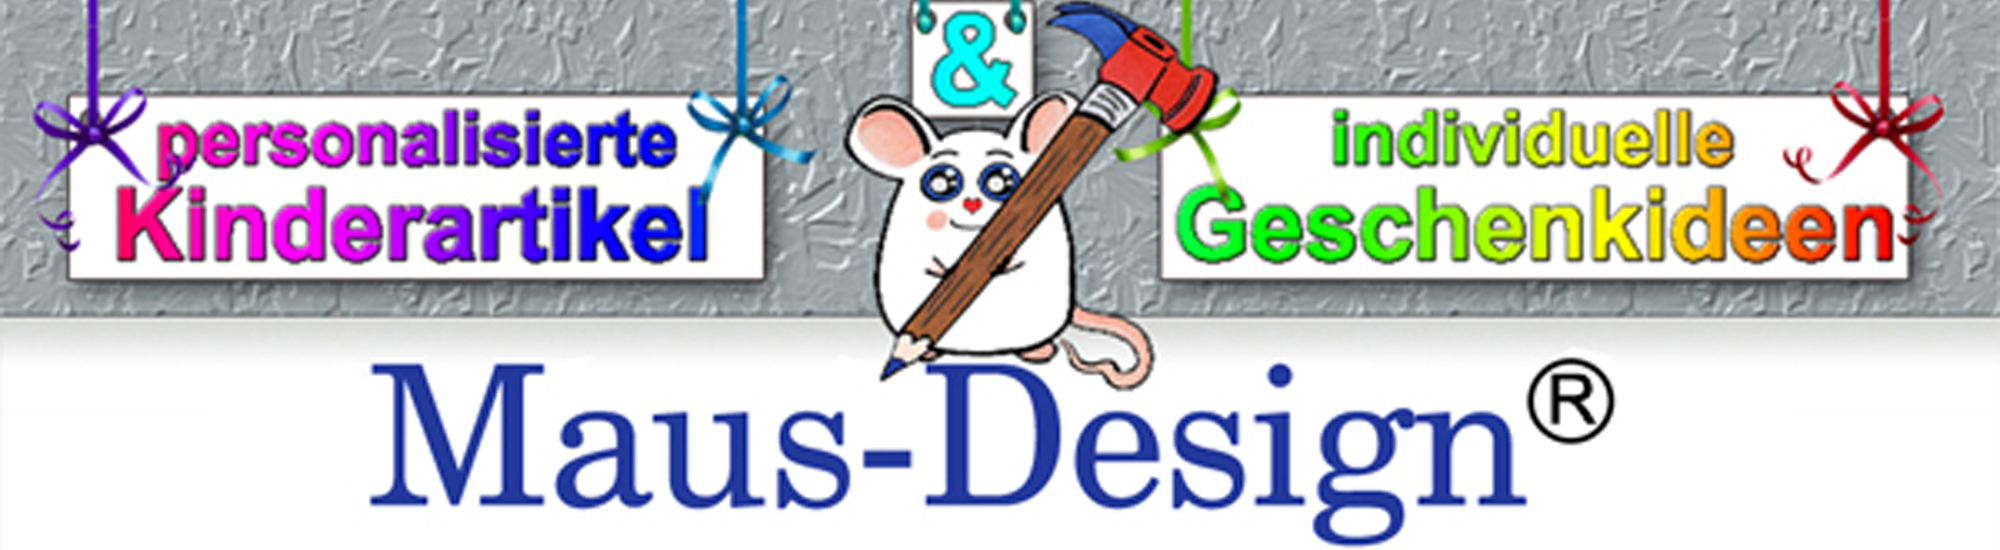 Maus-Design Inh. Sonja Maushammer personalisierte Kinderartikel & individuelle Geschenkideen